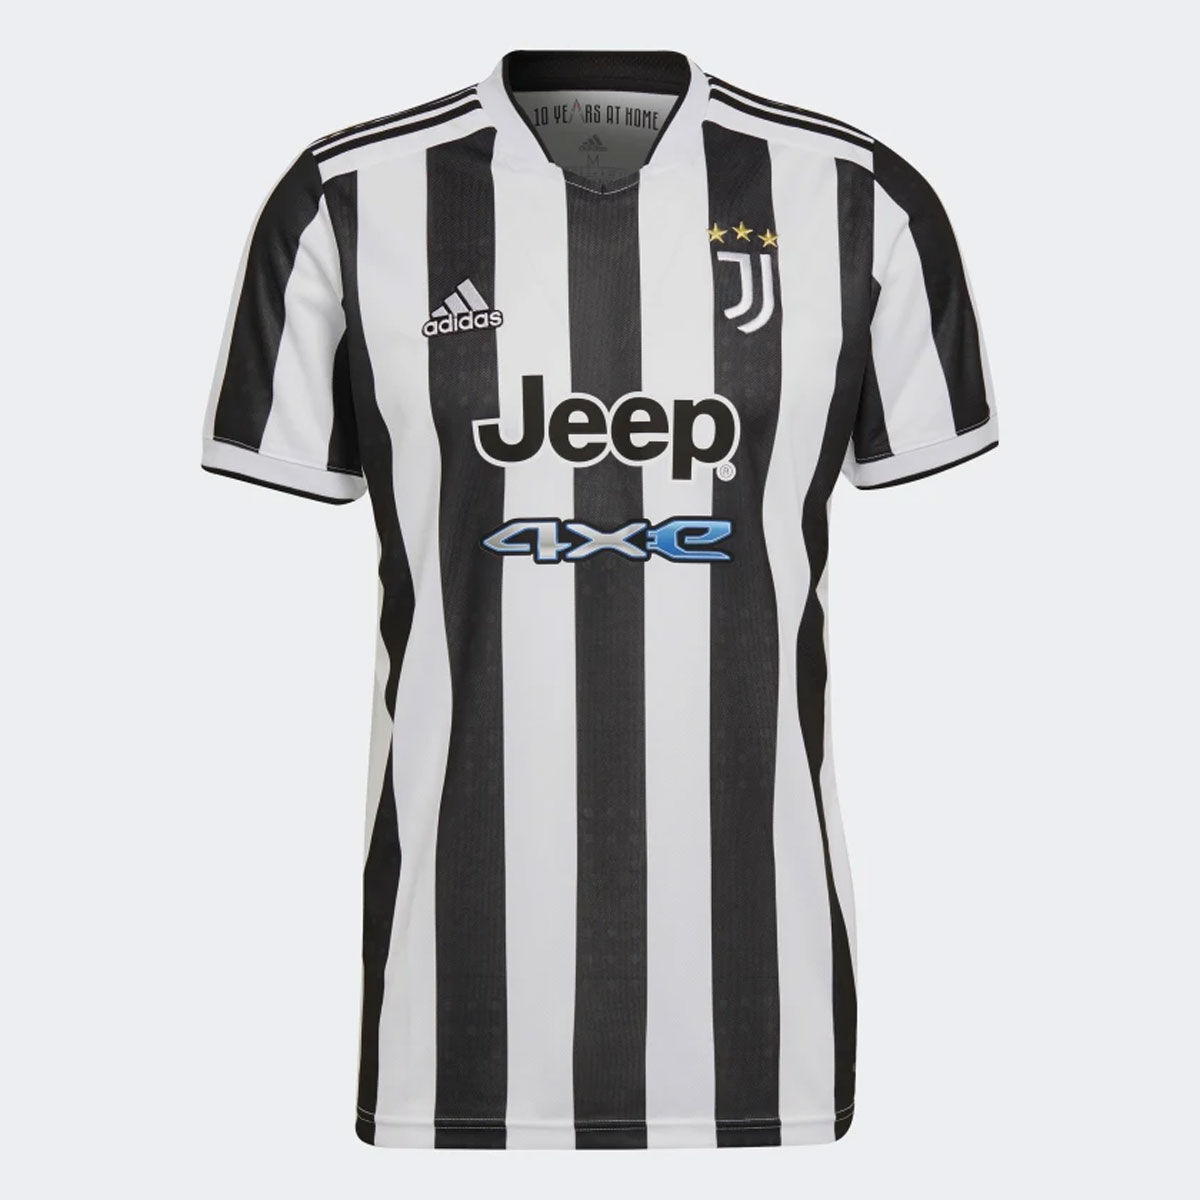 Adidas Juventus 21/22 Home Jersey